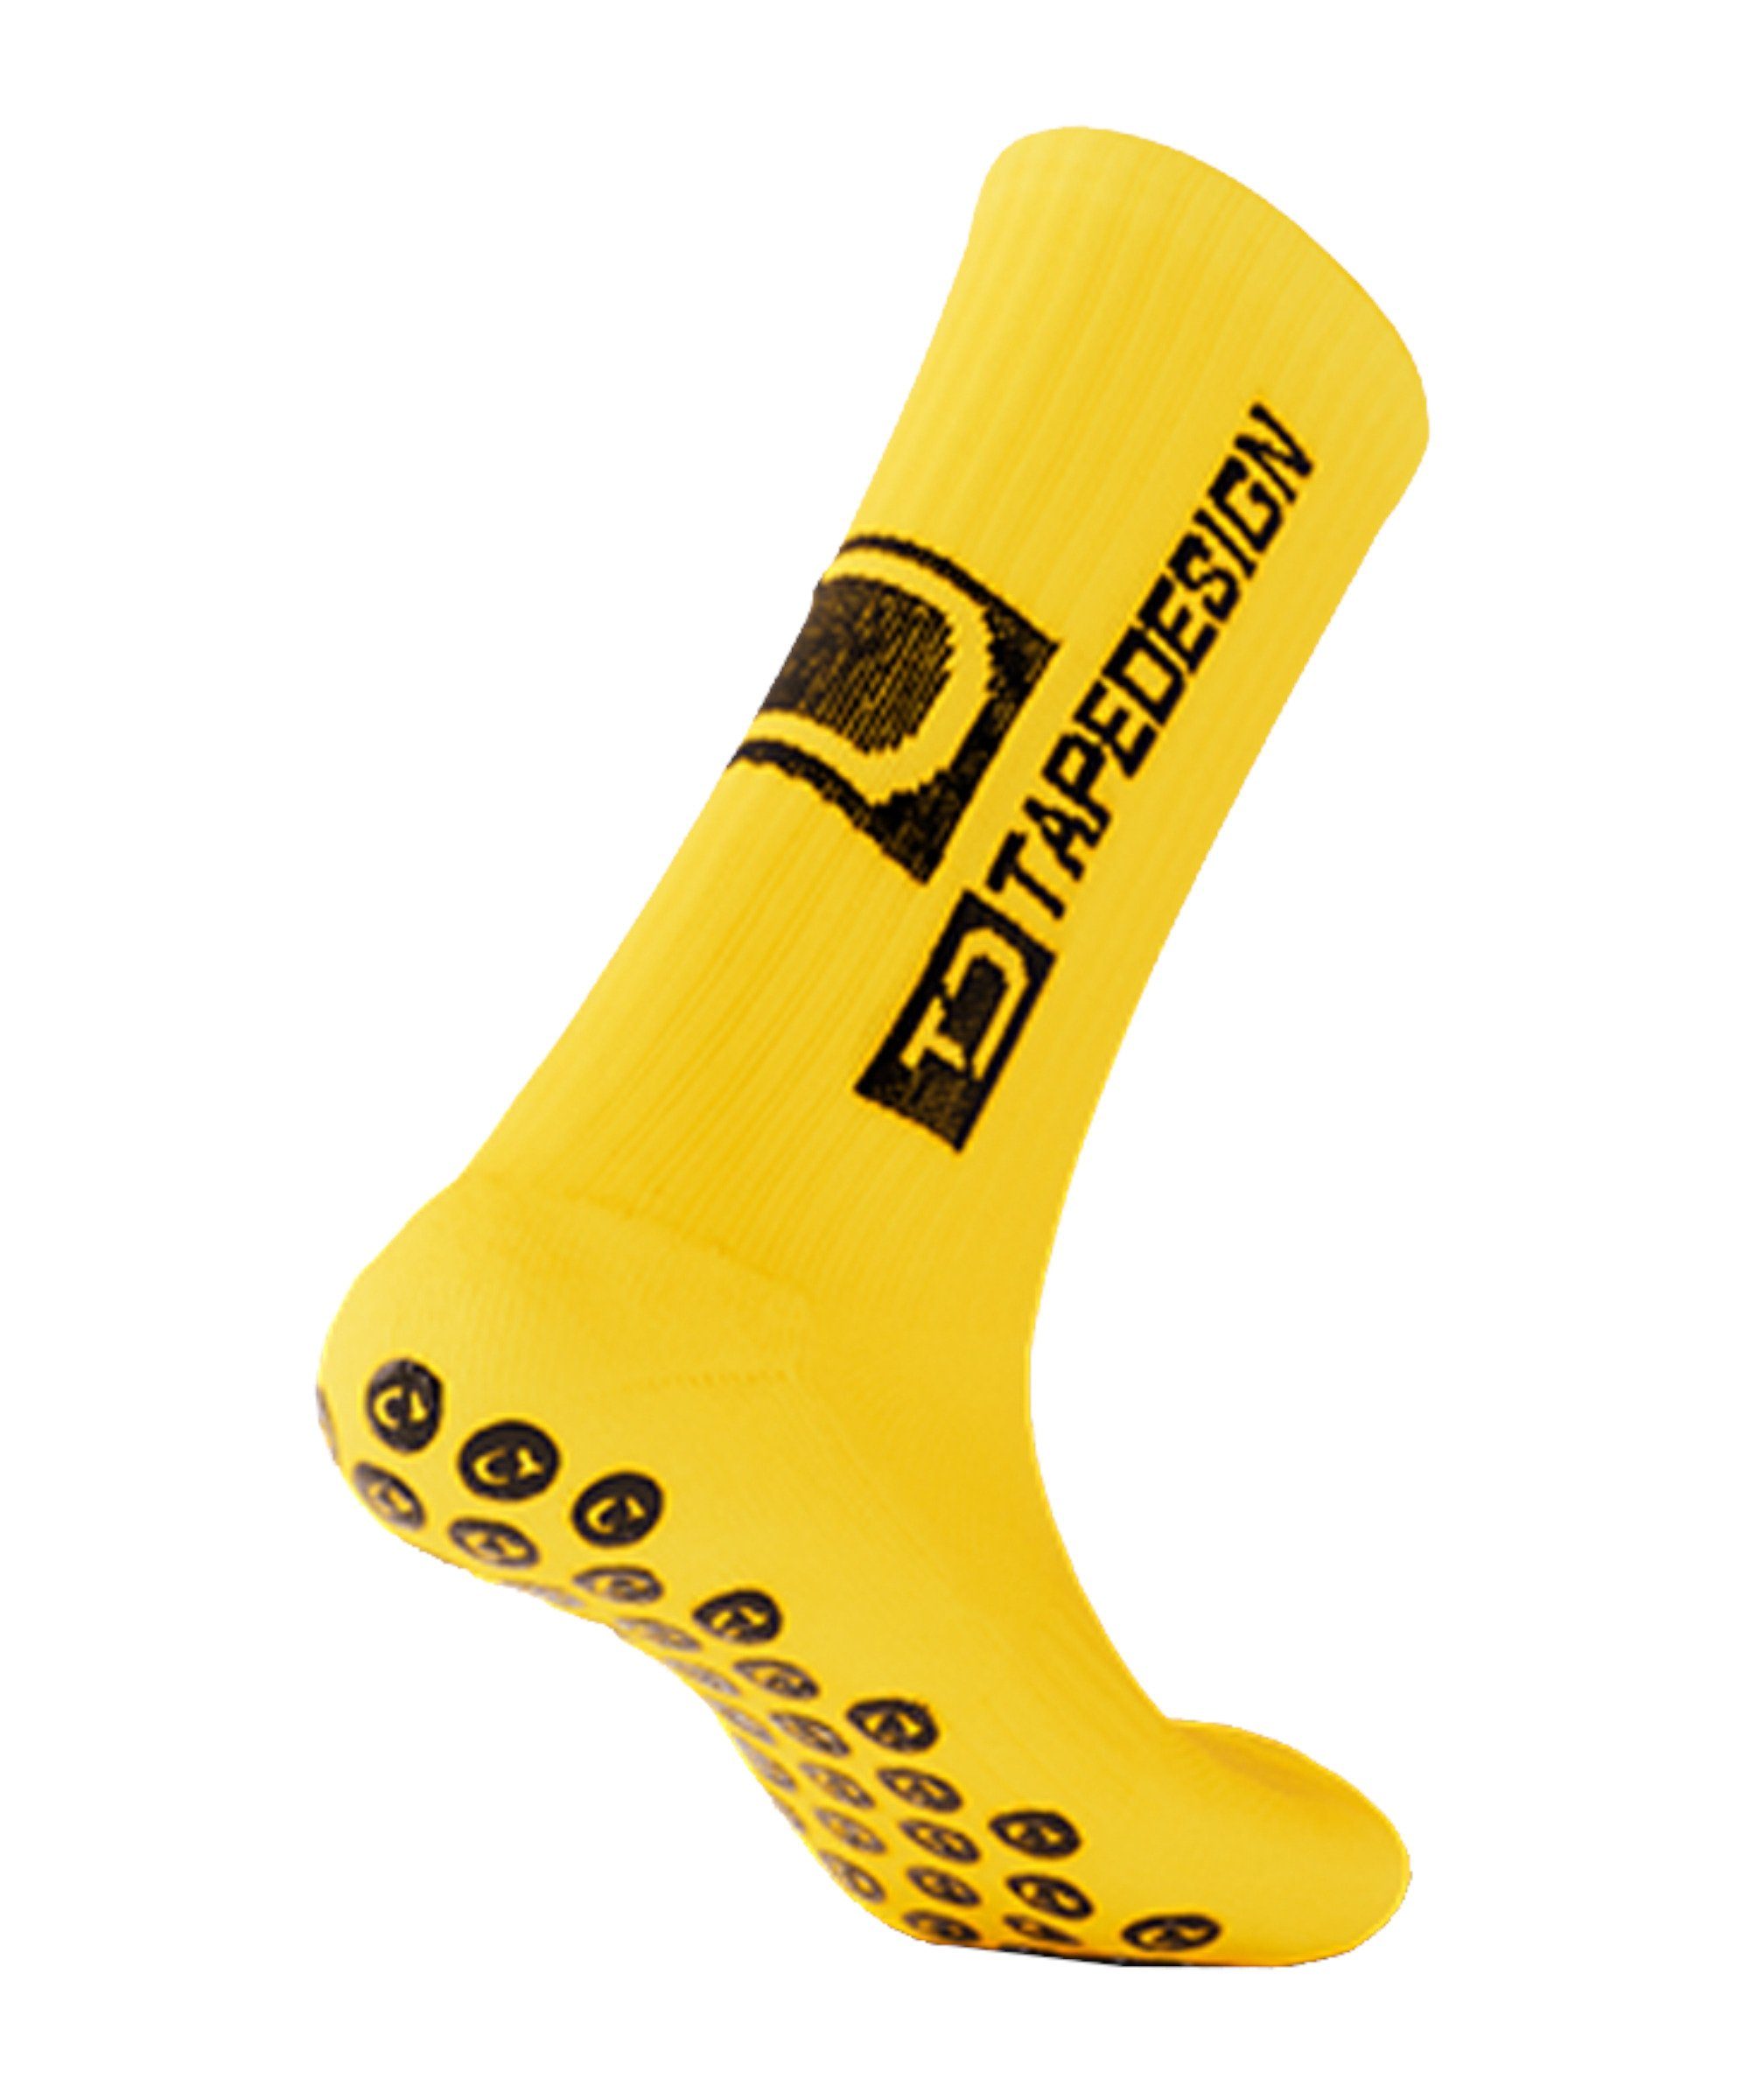 Tapedesign Sportsocken Socken gelb default Gripsocks